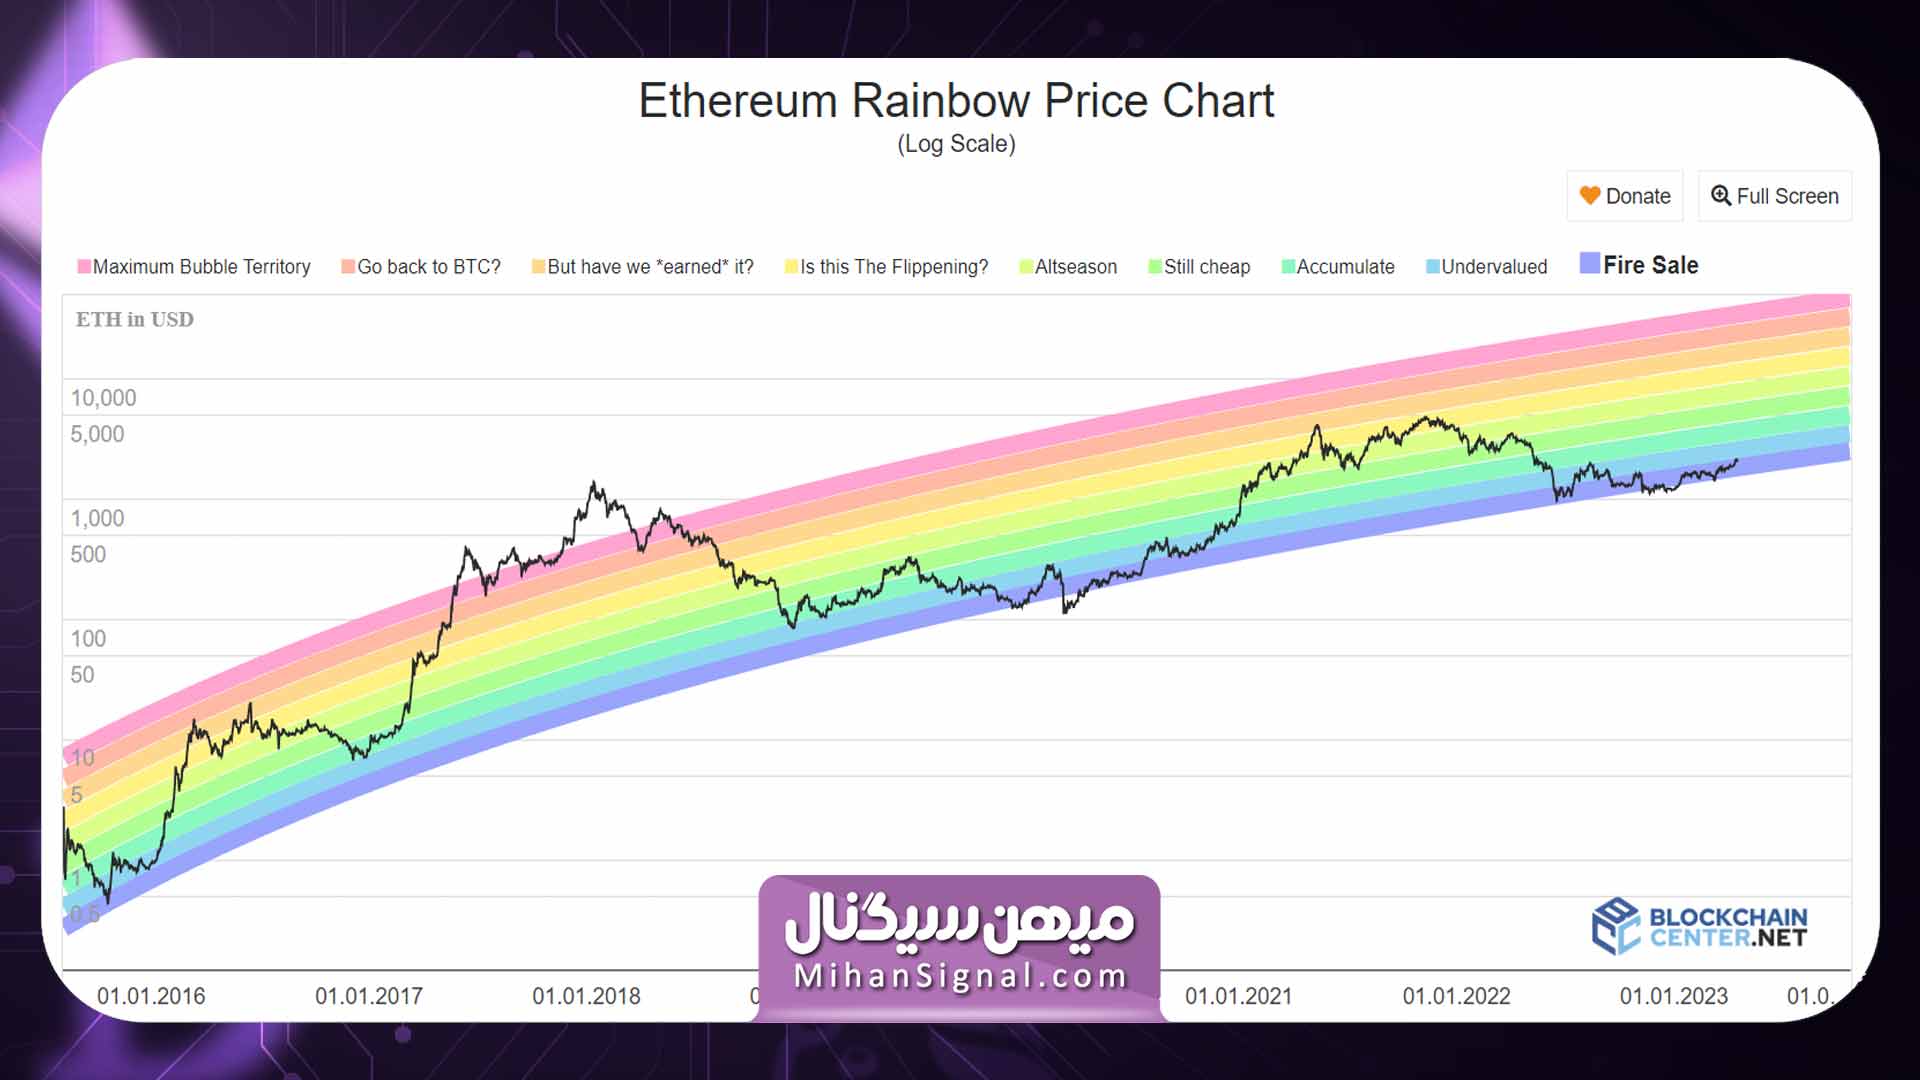 نمودار رنگین کمان قیمت اتریوم برگرفته از سایت بلاک چین سنتر